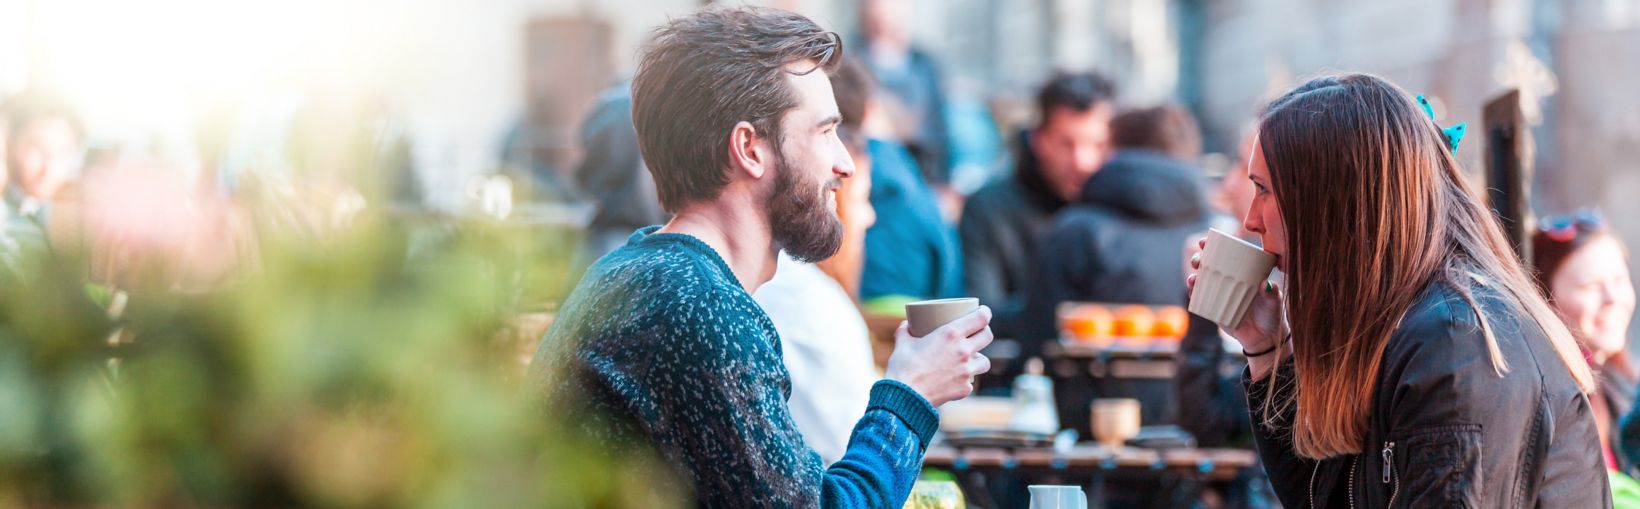 Giovane donna adulta con lunghi capelli castani e amico che bevono un caffè al tavolo fuori da un bar in una giornata luminosa ma fredda